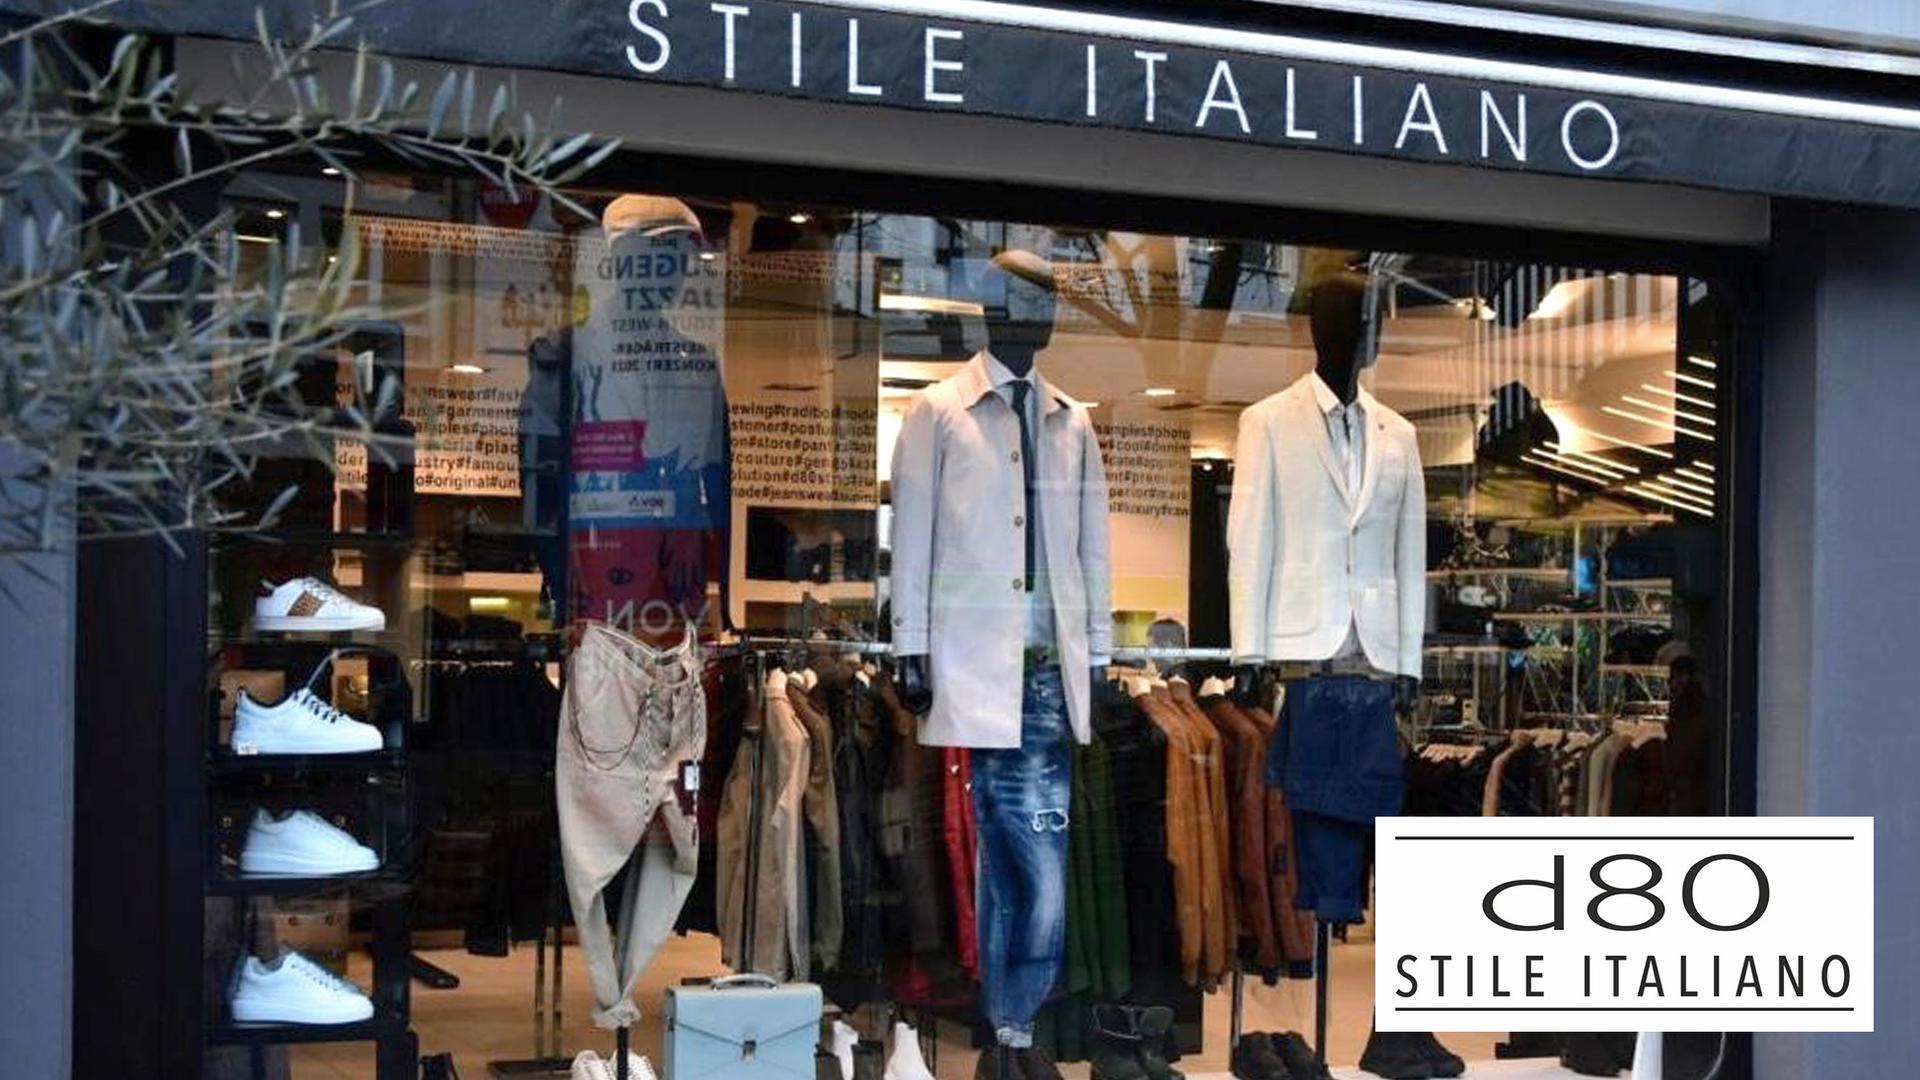 Die Boutique d80 Stile Italiano bietet Hochzeitsanzüge aus der italienischen Modewelt